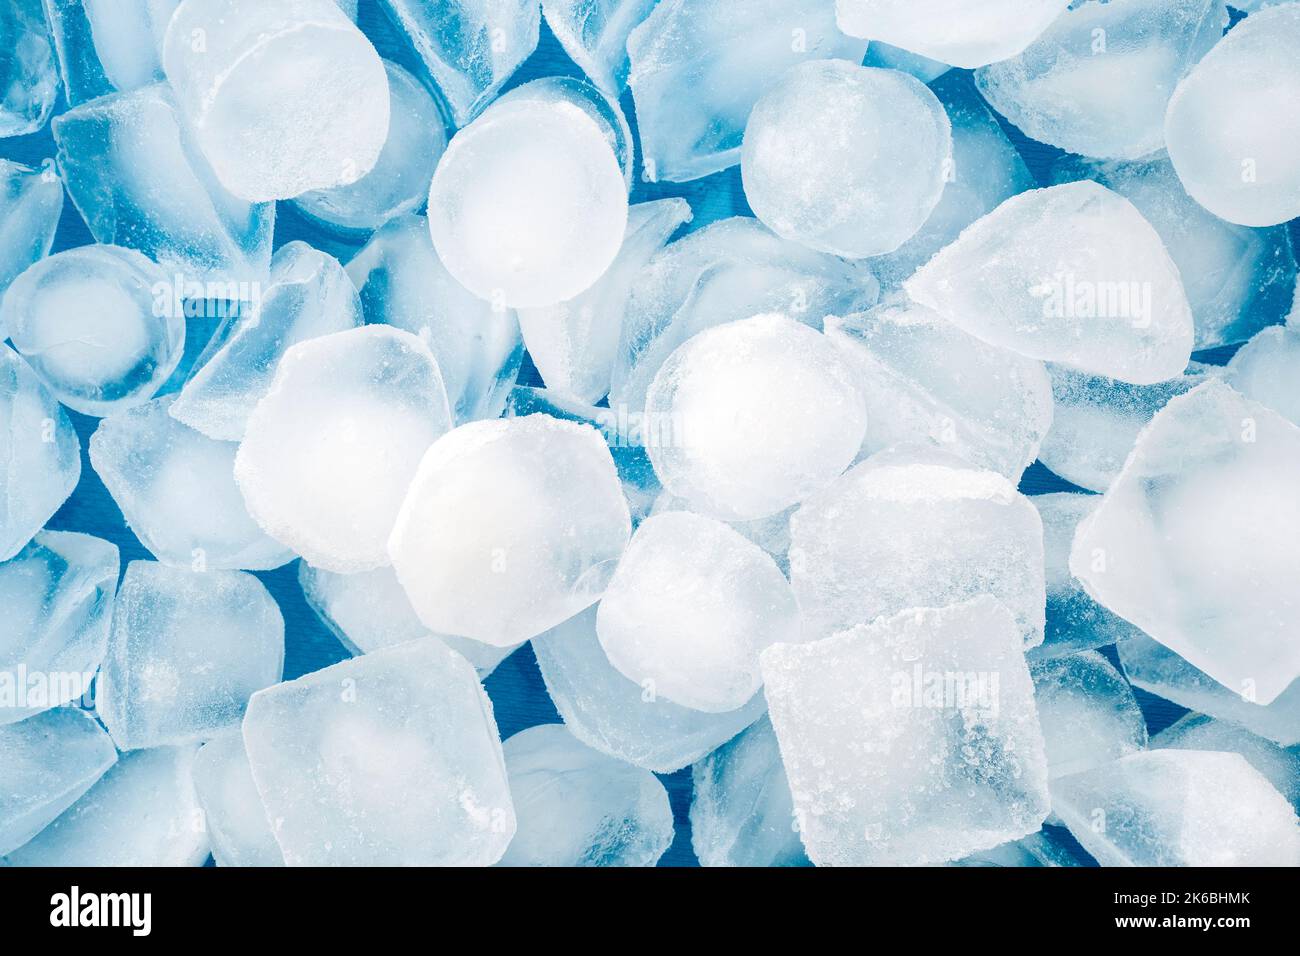 Forme astratte del ghiaccio sulla superficie blu, vista dall'alto per gli sfondi Foto Stock